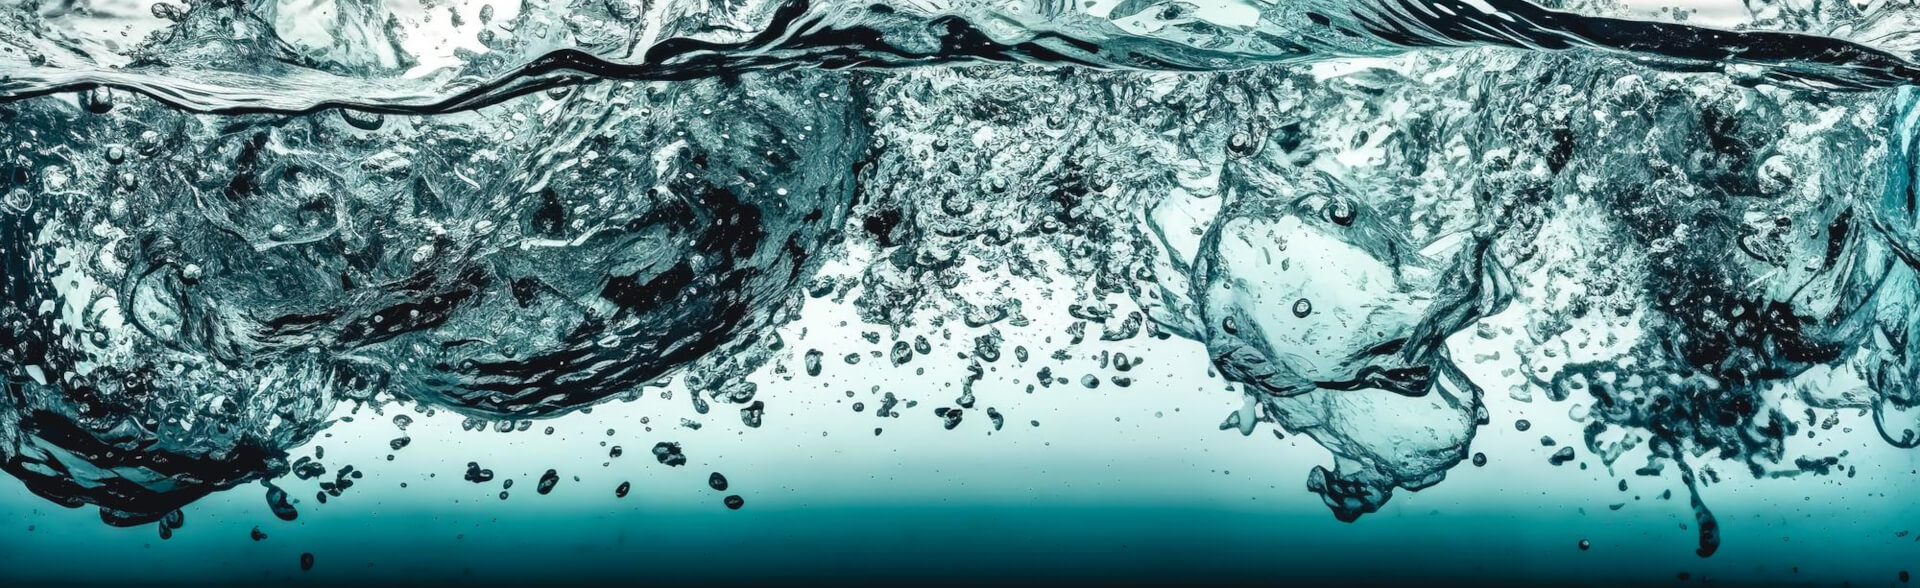 Suavizando el Agua, Suavizando Procesos: El Impacto de Agua Suavizada de RAMSA en la Industria